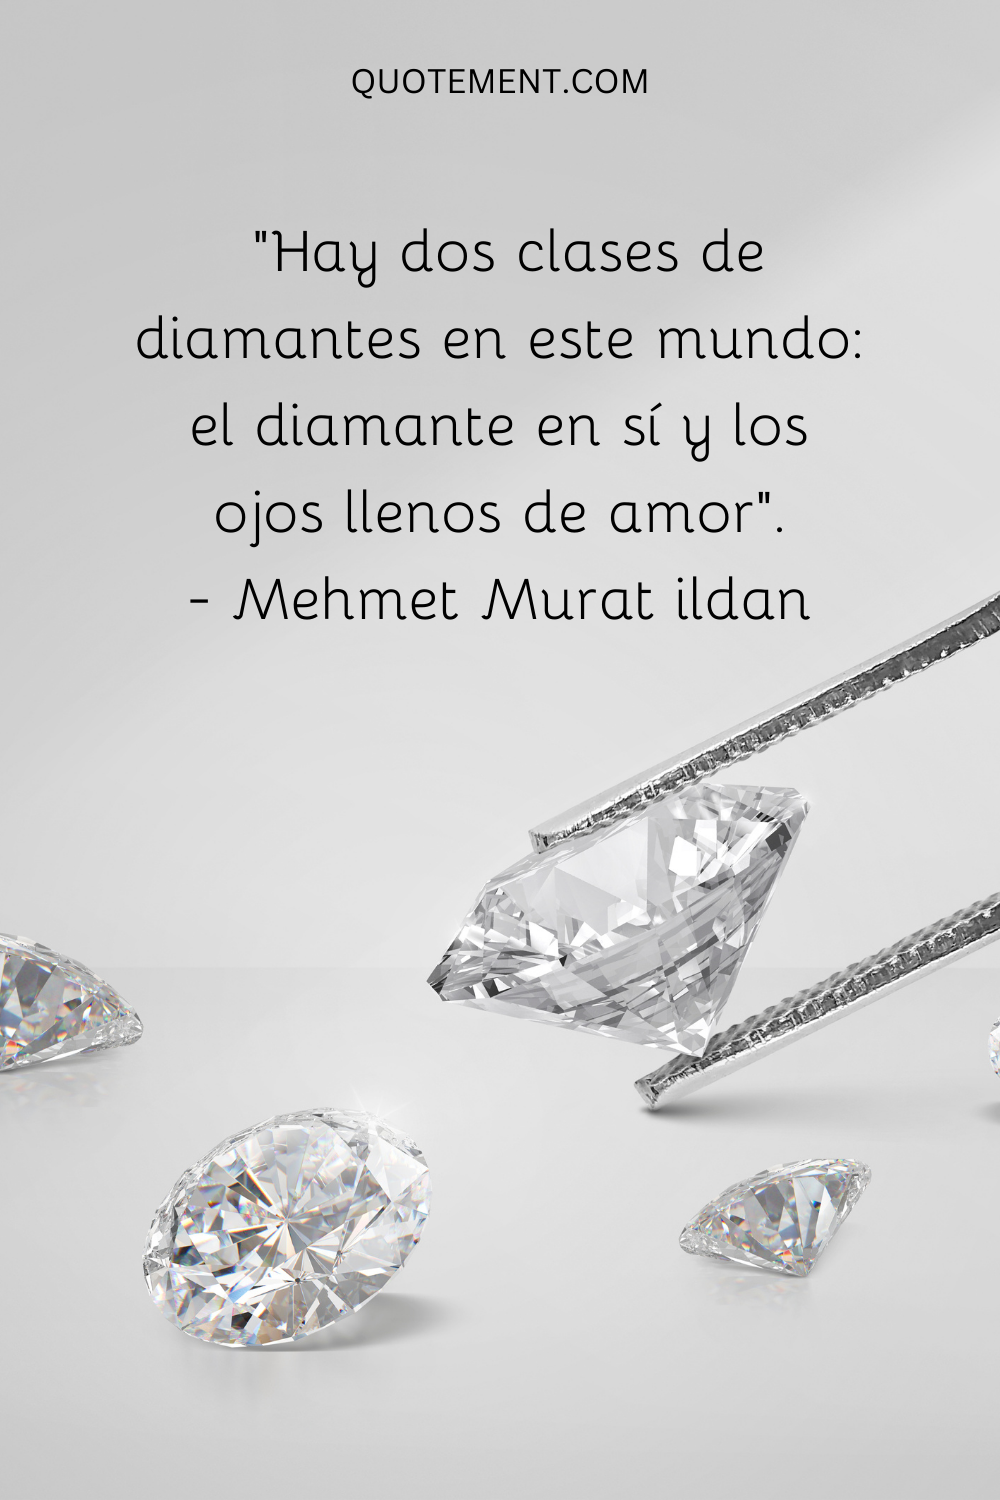 Hay dos clases de diamantes en este mundo